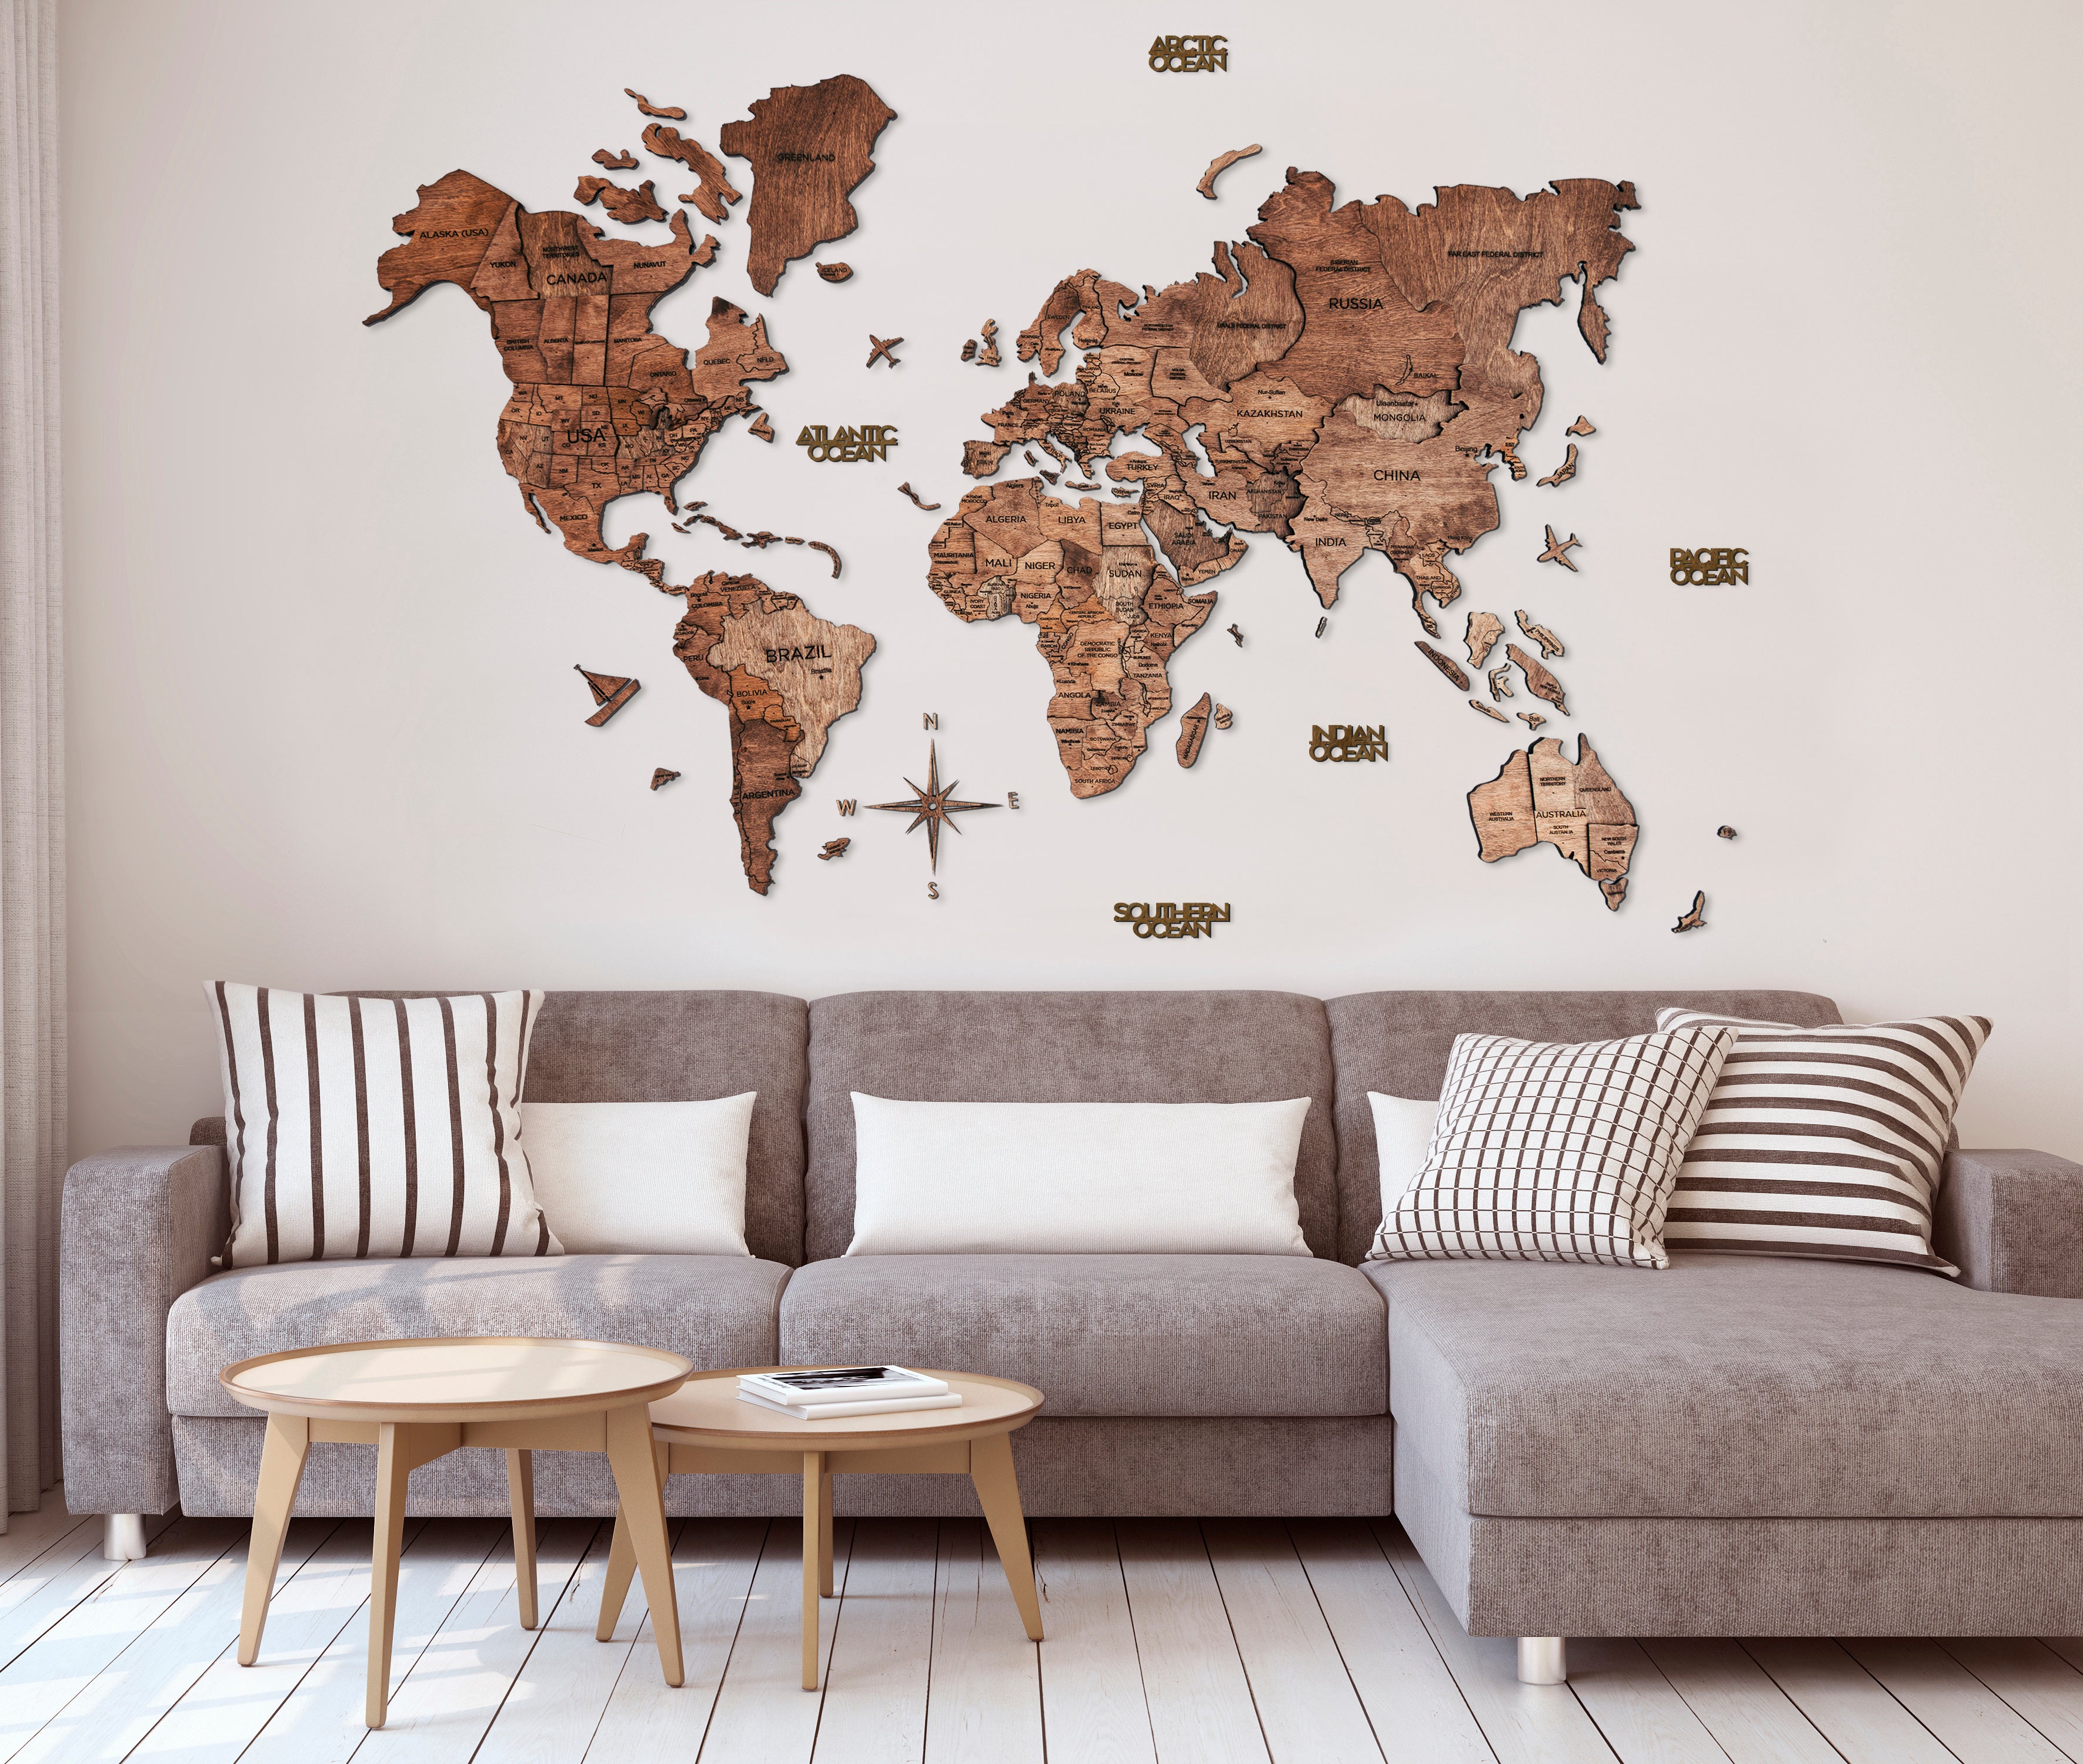 3D Wood World Map ダークウォルナット 壁掛け木製世界地図【翌日出荷】